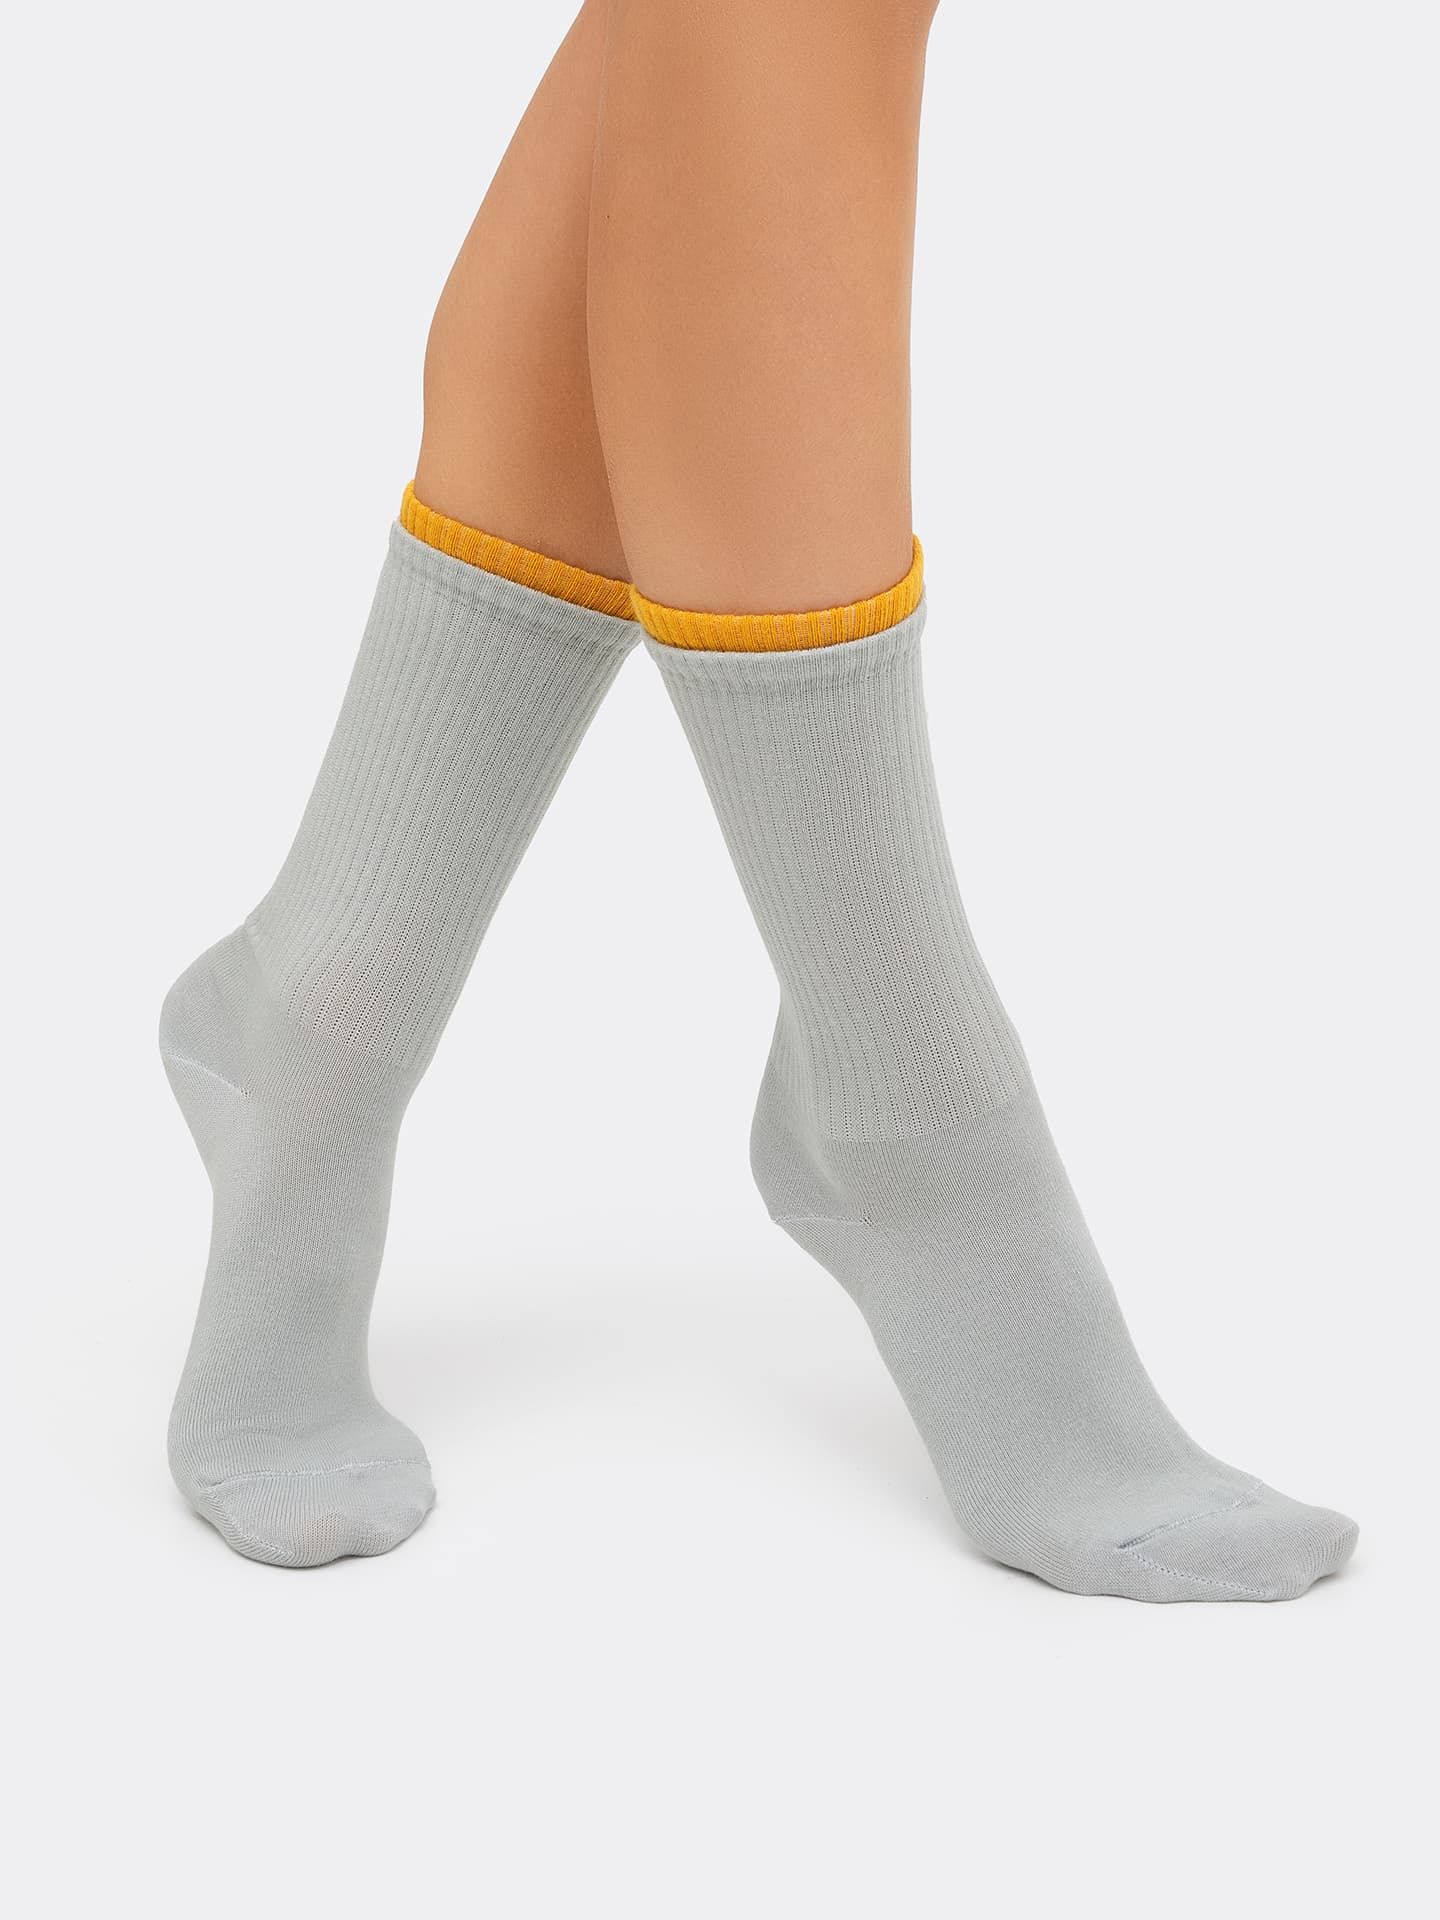 Женские носки с оригинальным двойным бортом светло-оливкового цвета